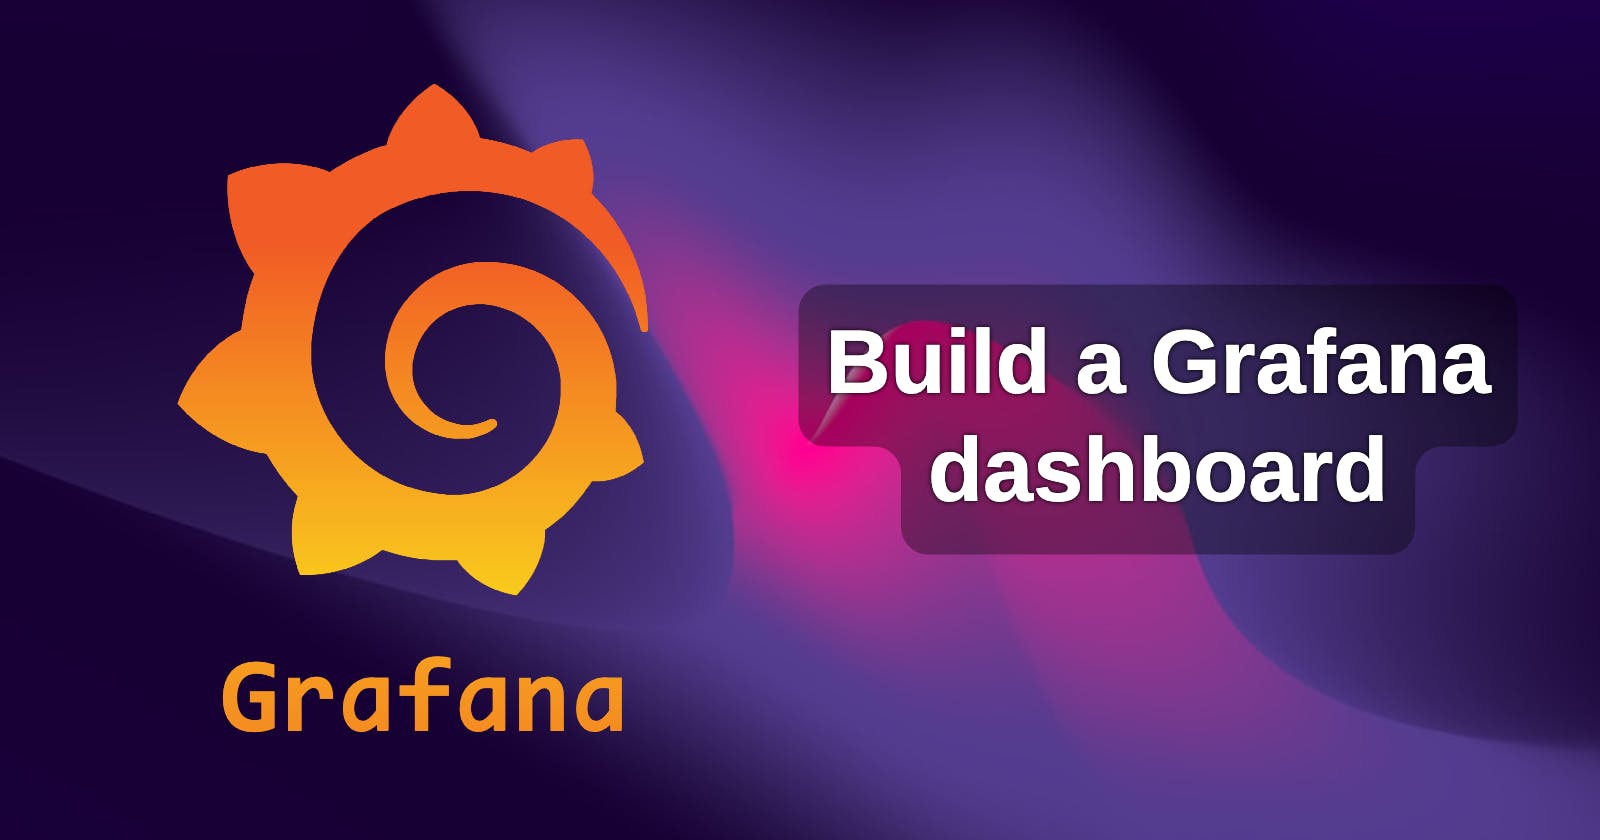 Build a Grafana dashboard